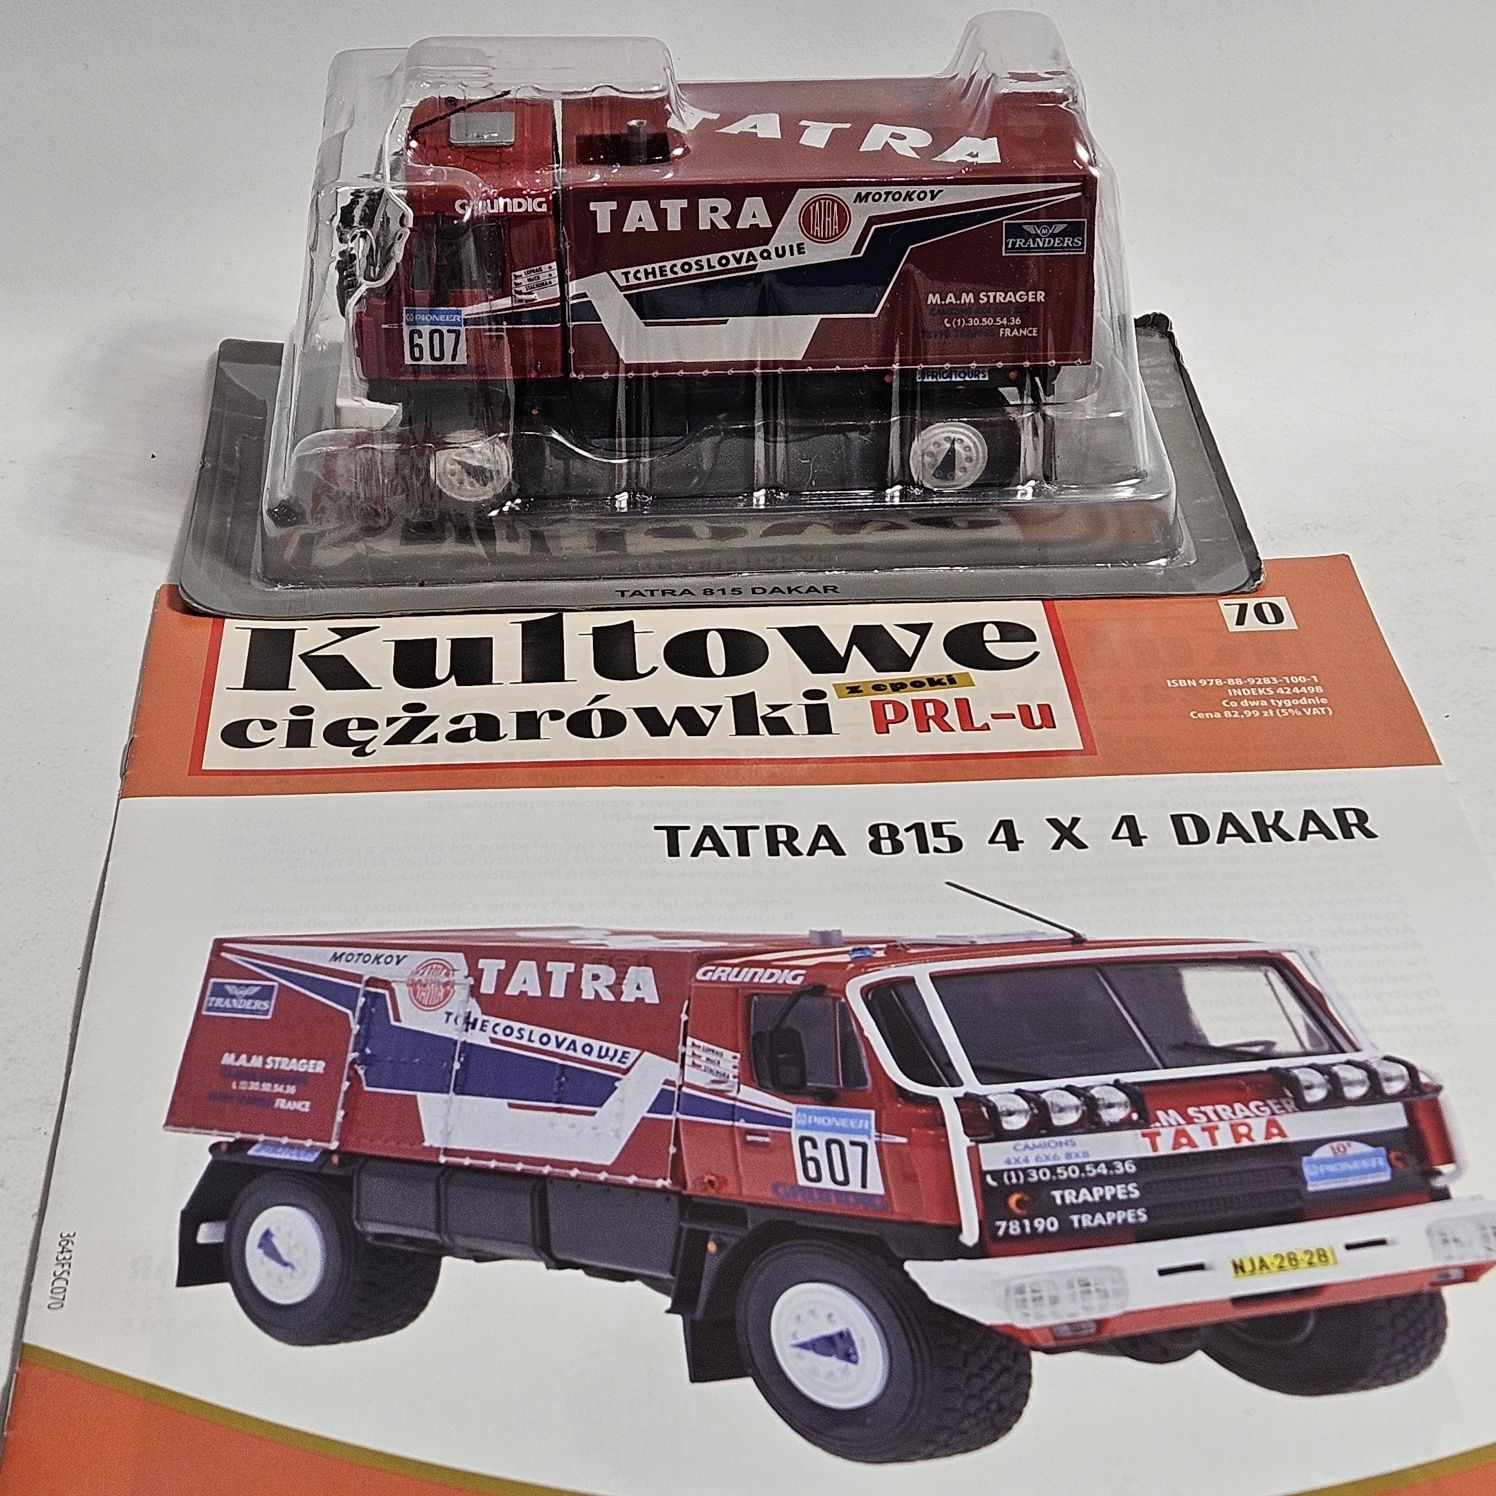 1/43 TATRA 815 Dakar, STAR 266 Dakar, LIAZ 100.55 Dakar, RABA F26